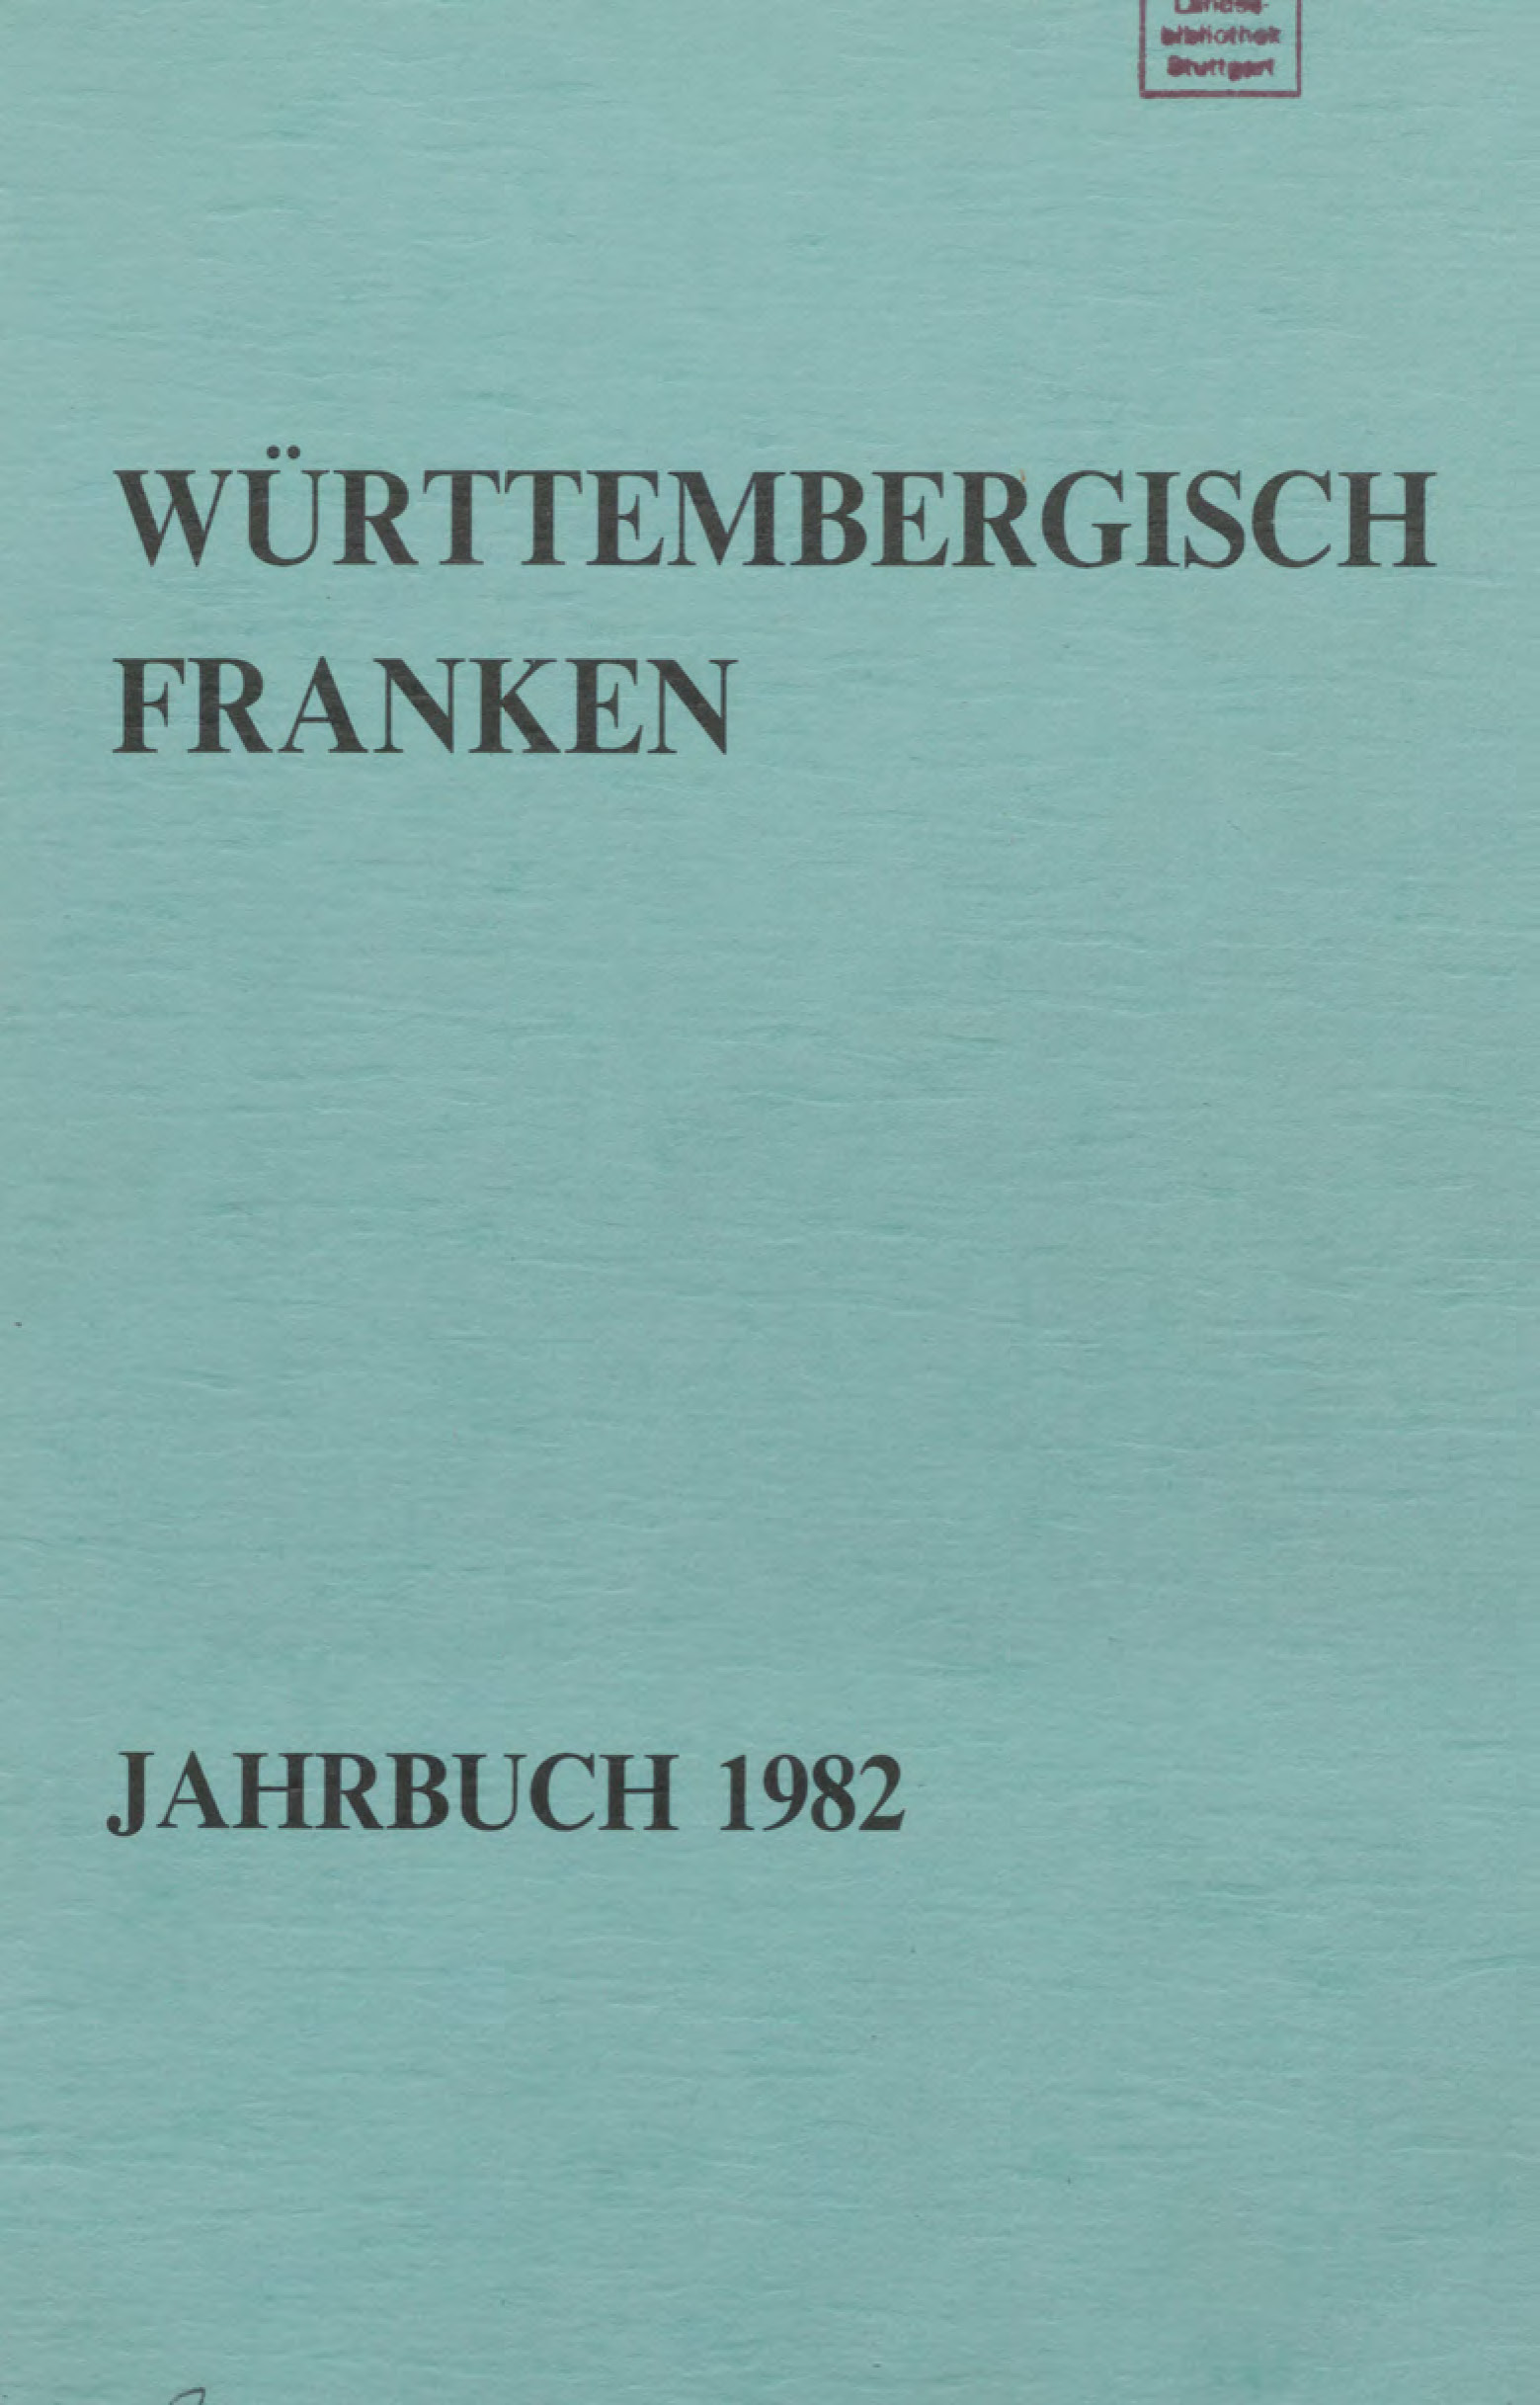                     Ansehen Bd. 66 (1982): Württembergisch Franken
                